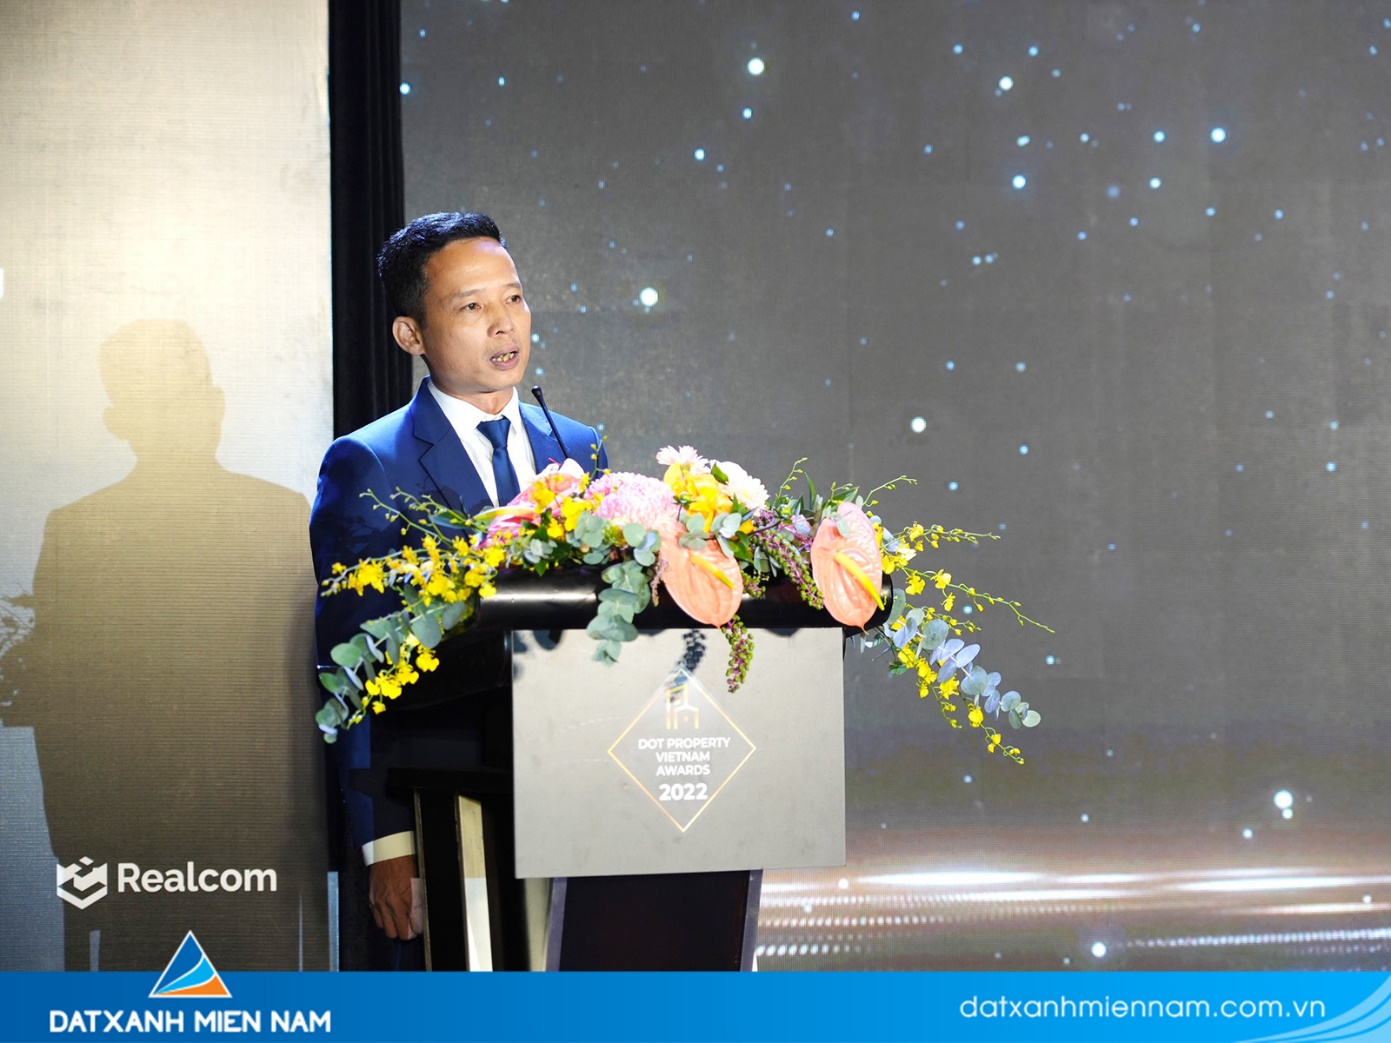 Tổng giám đốc Đỗ Văn Mạnh đại diện nhận giải và phát biểu tại buổi lễ - Ảnh: Đất Xanh Miền Nam